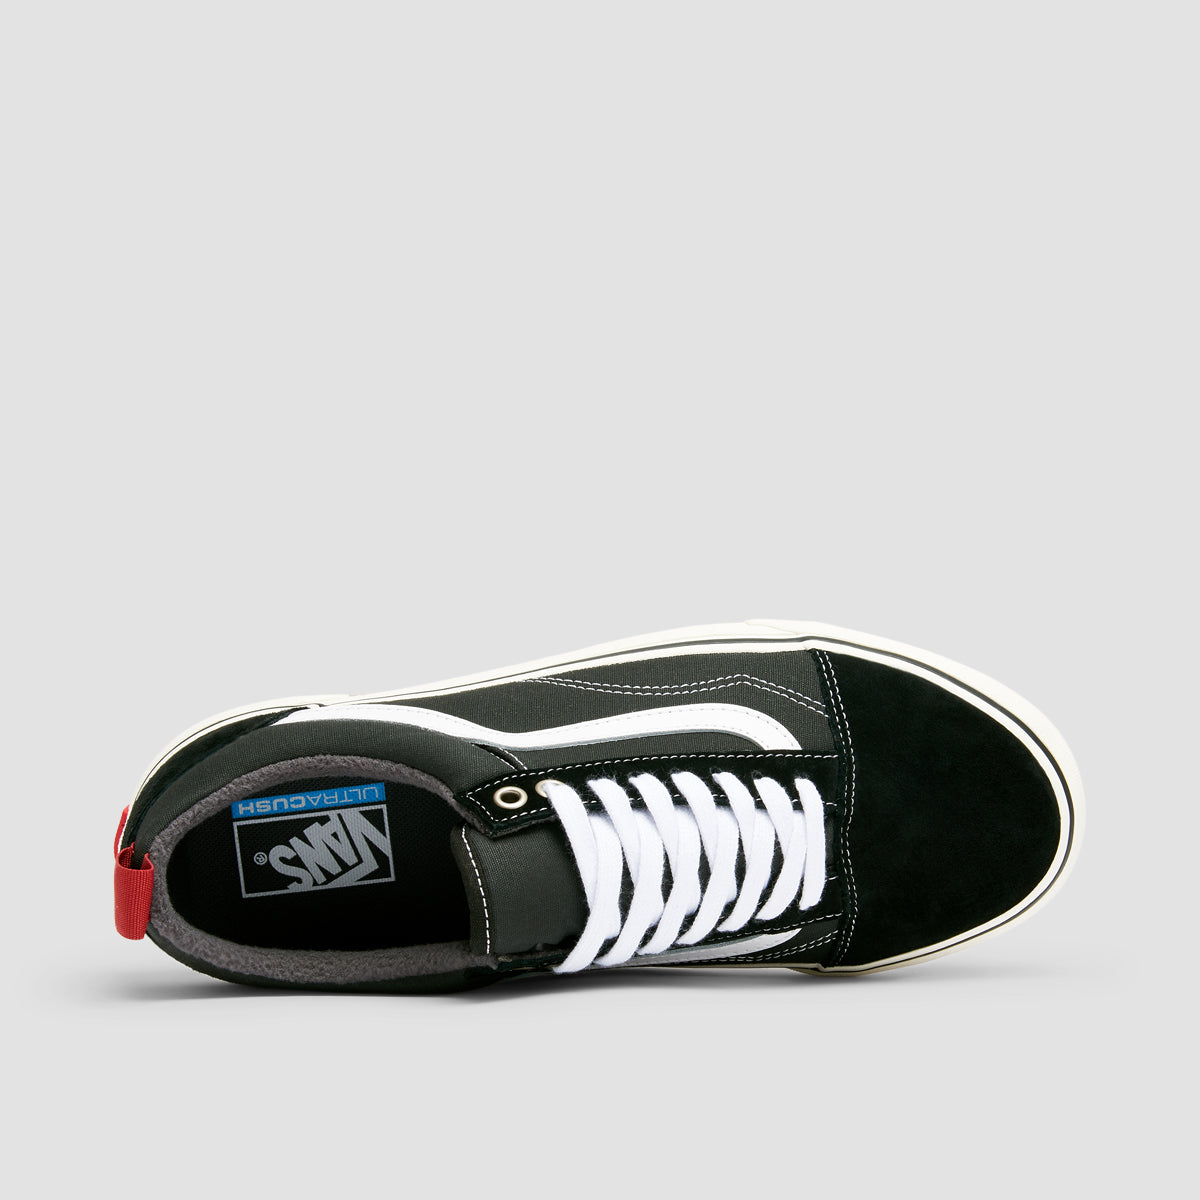 Vans Old Skool MTE-1 Shoes - Black/White